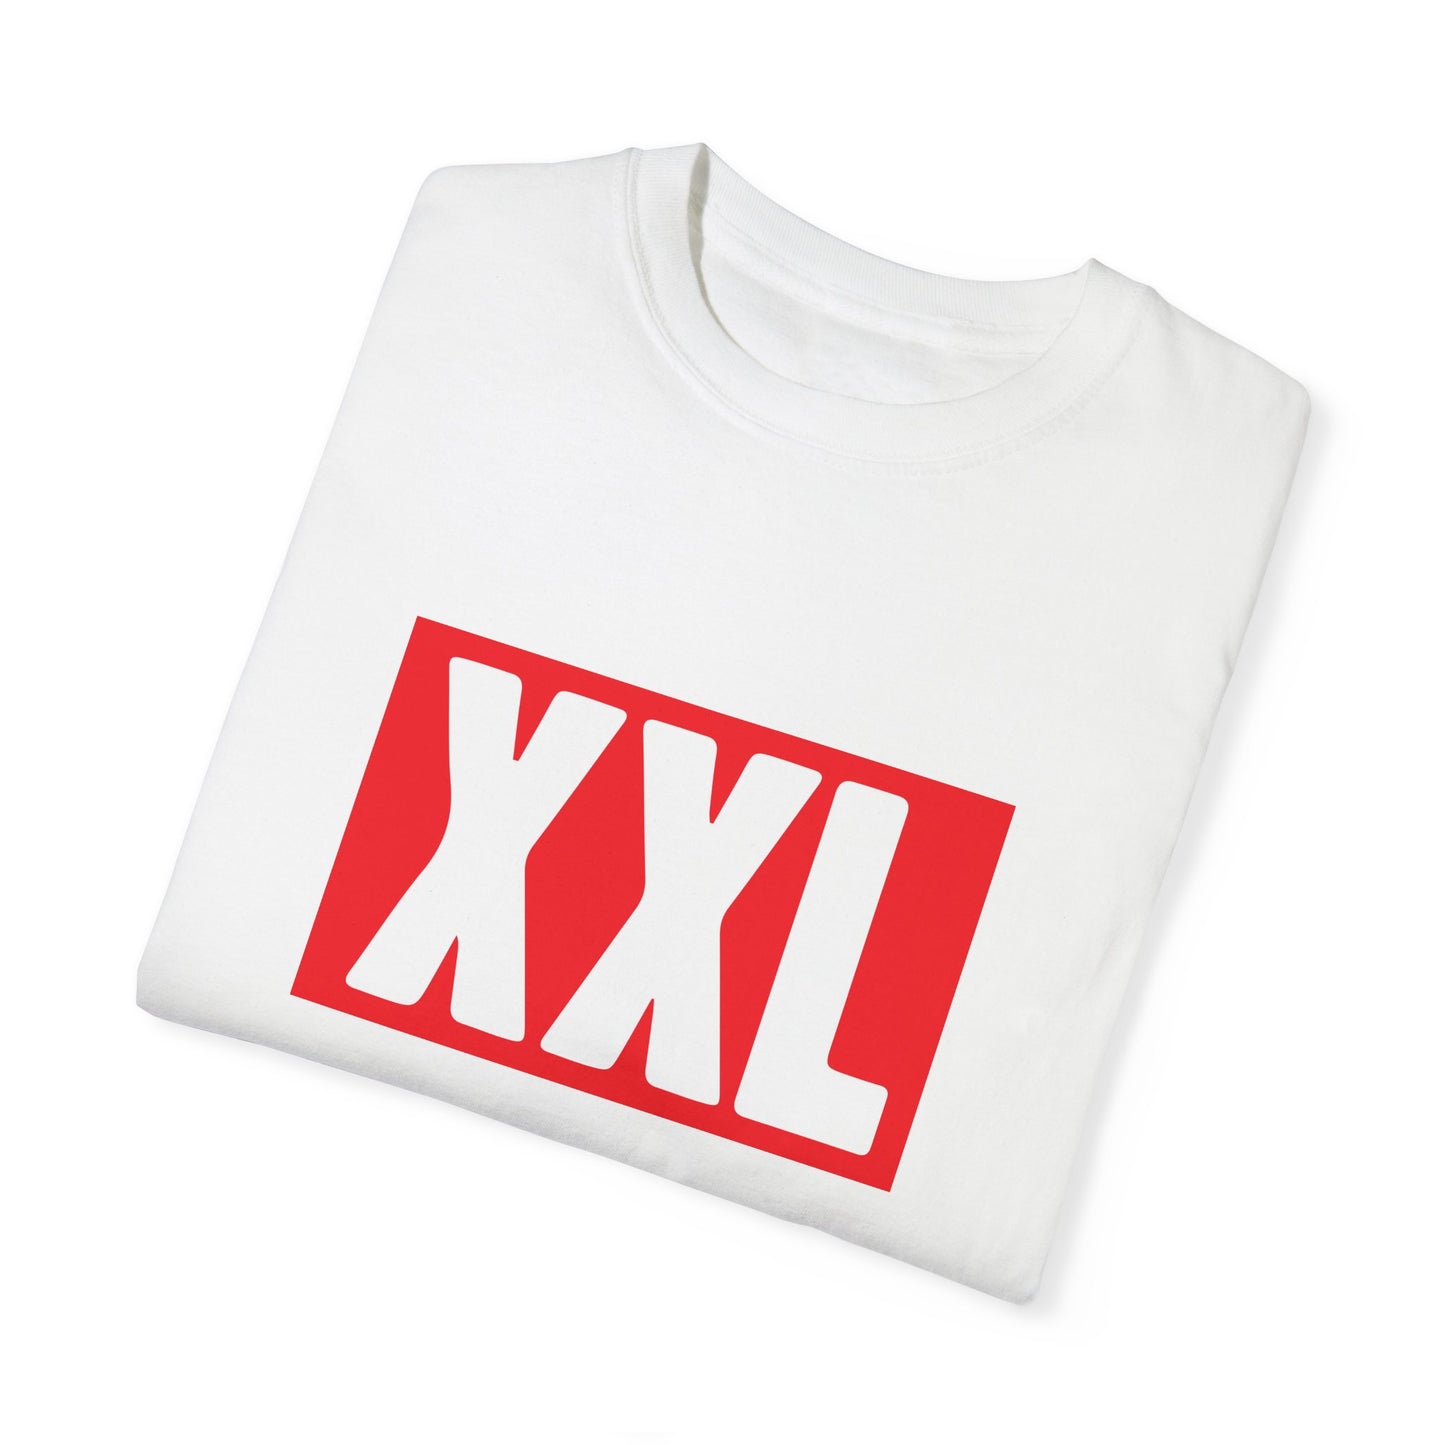 XXL Logo T-shirt